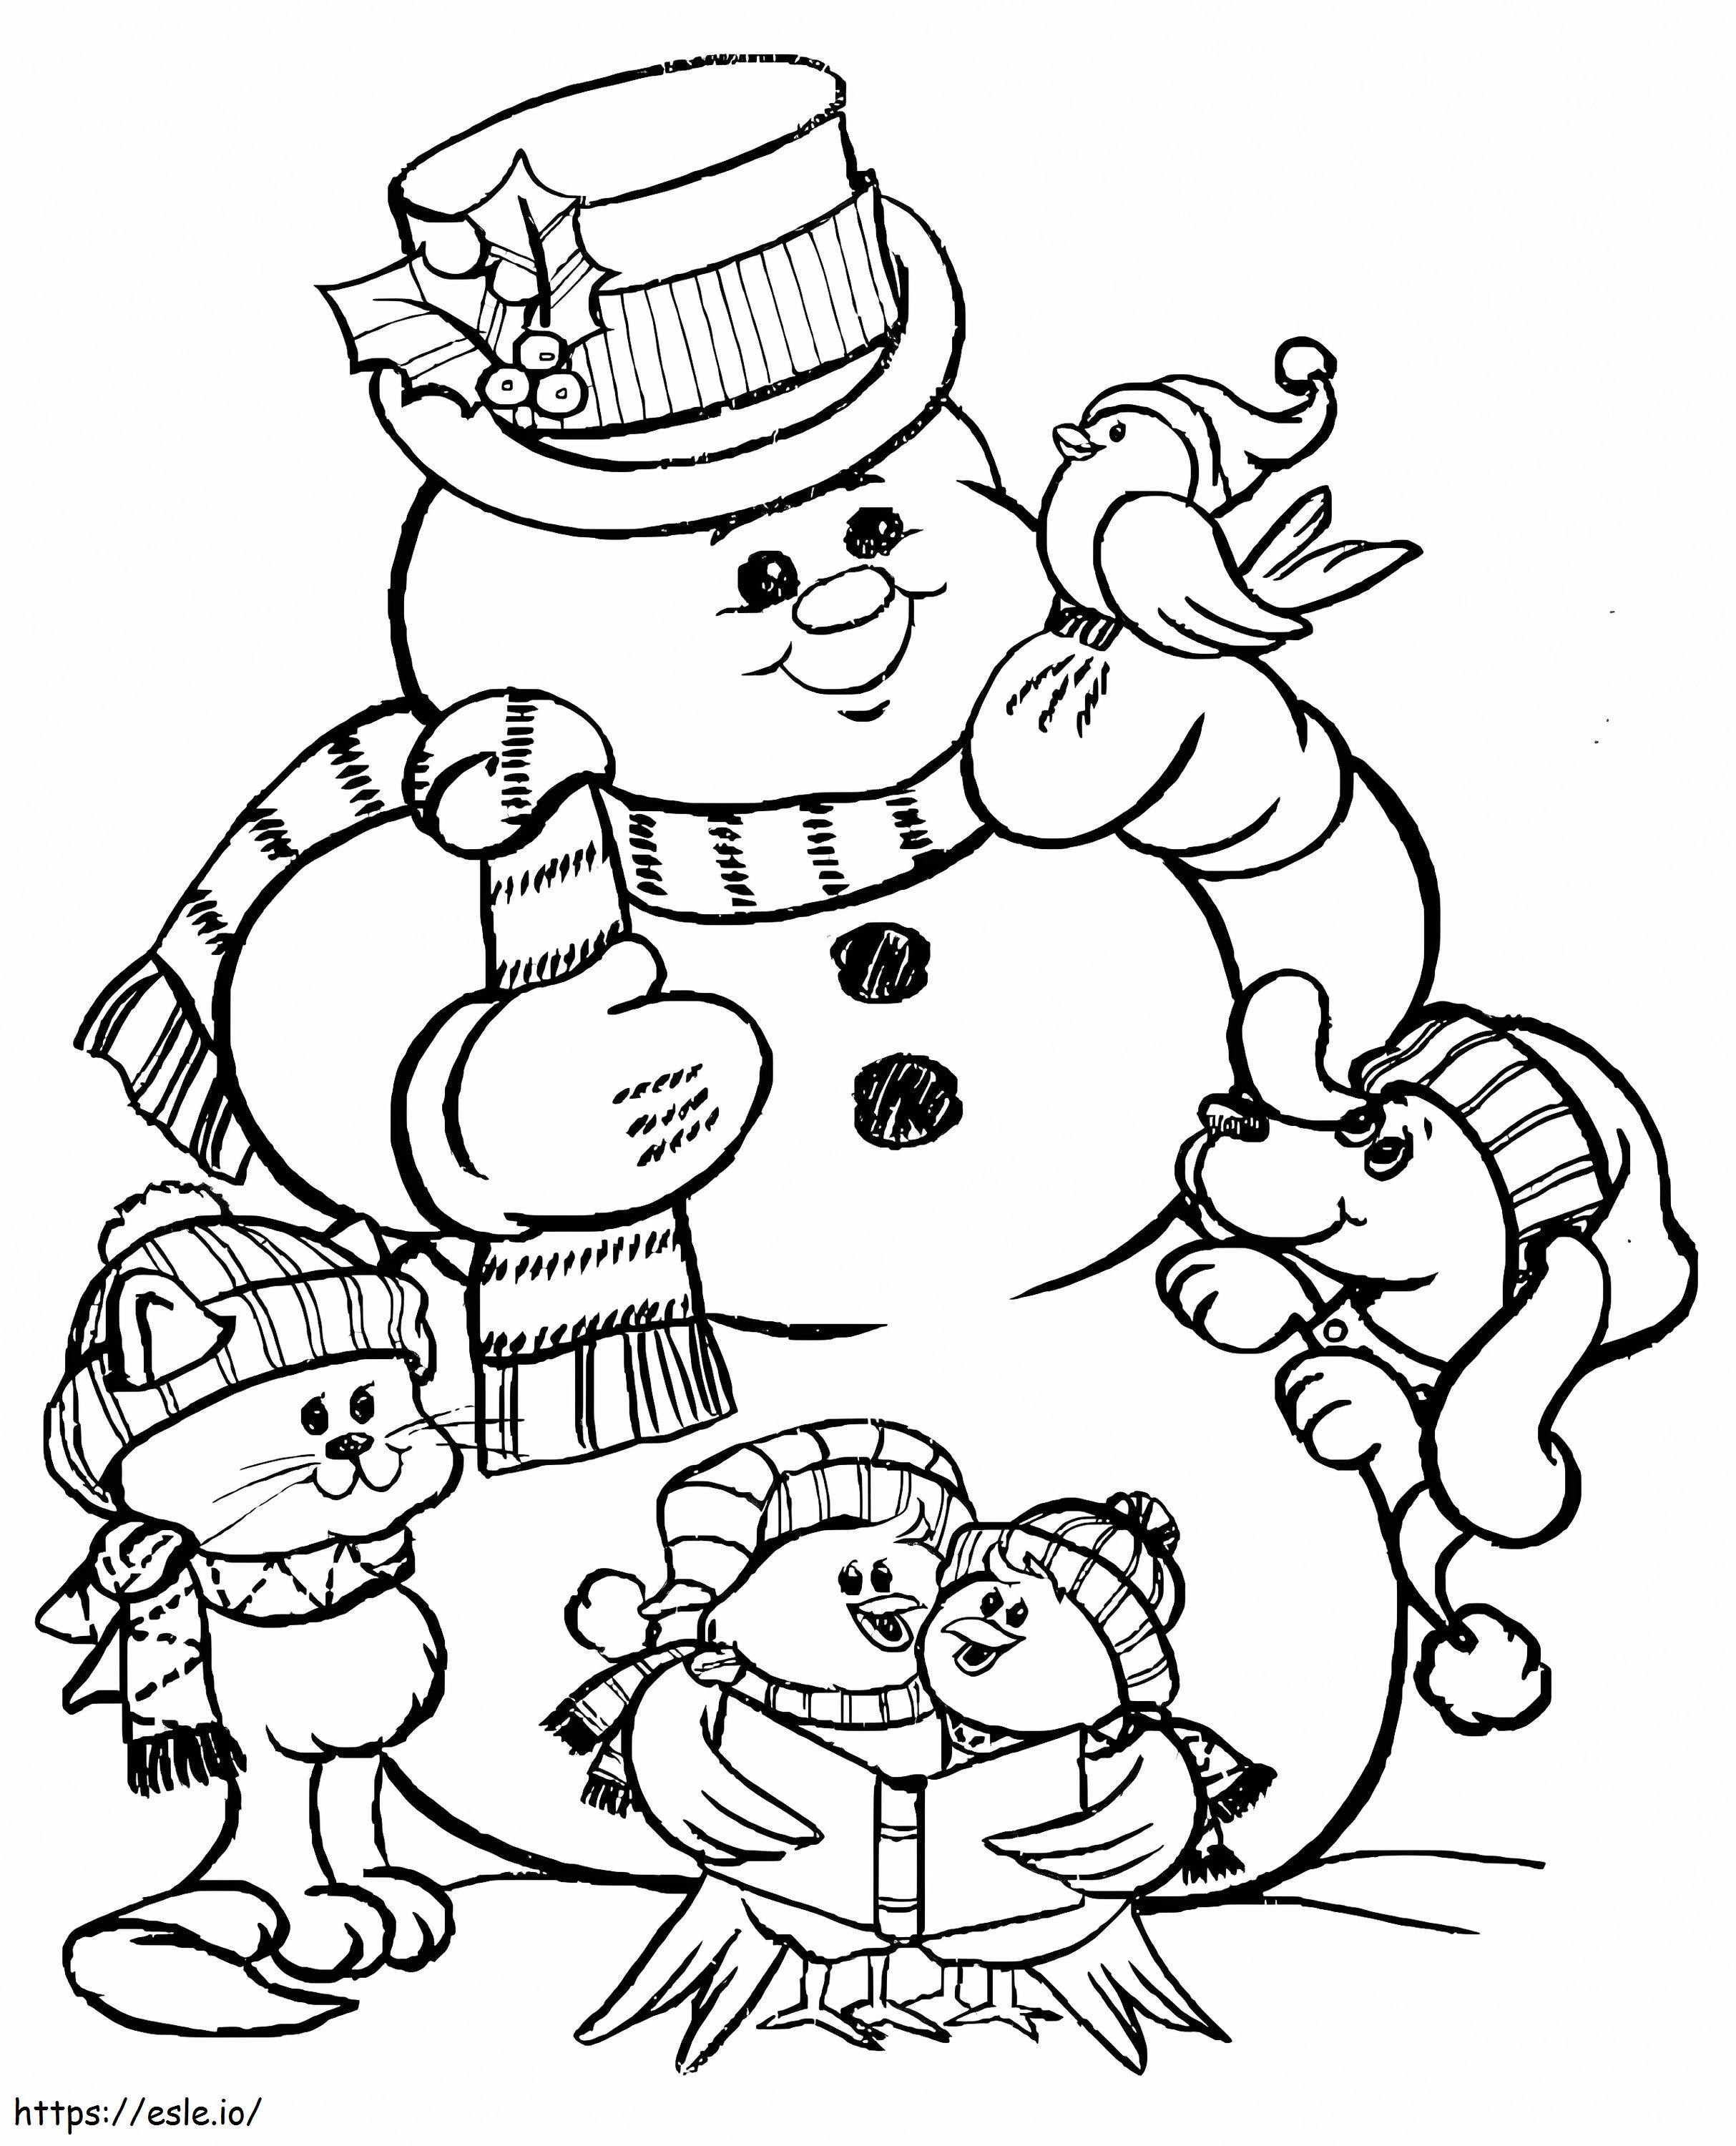 Animais e boneco de neve para colorir